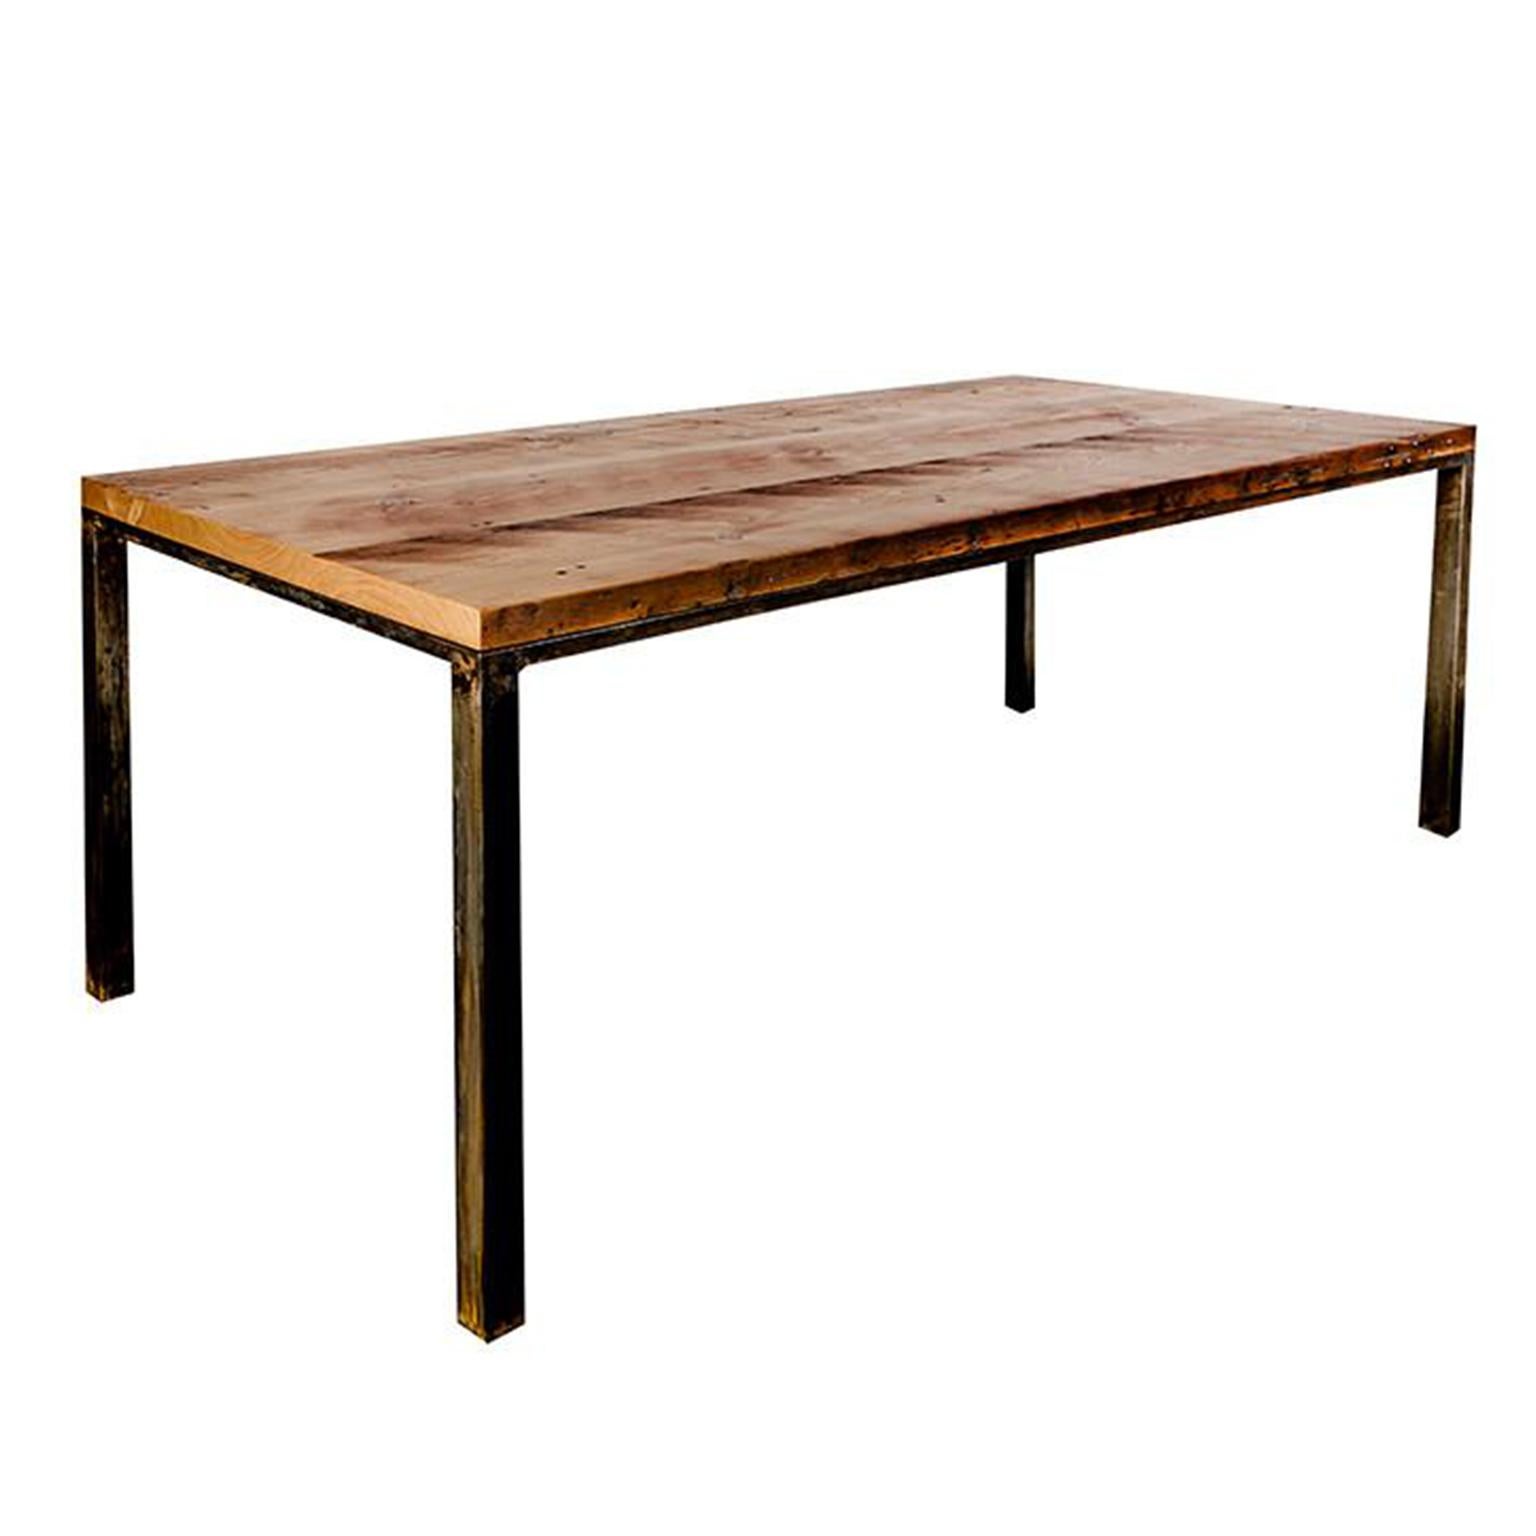 Maßgefertigter Industrietisch „“Workshop Table“ mit Massivholzplatte und Stahlfuß, klein